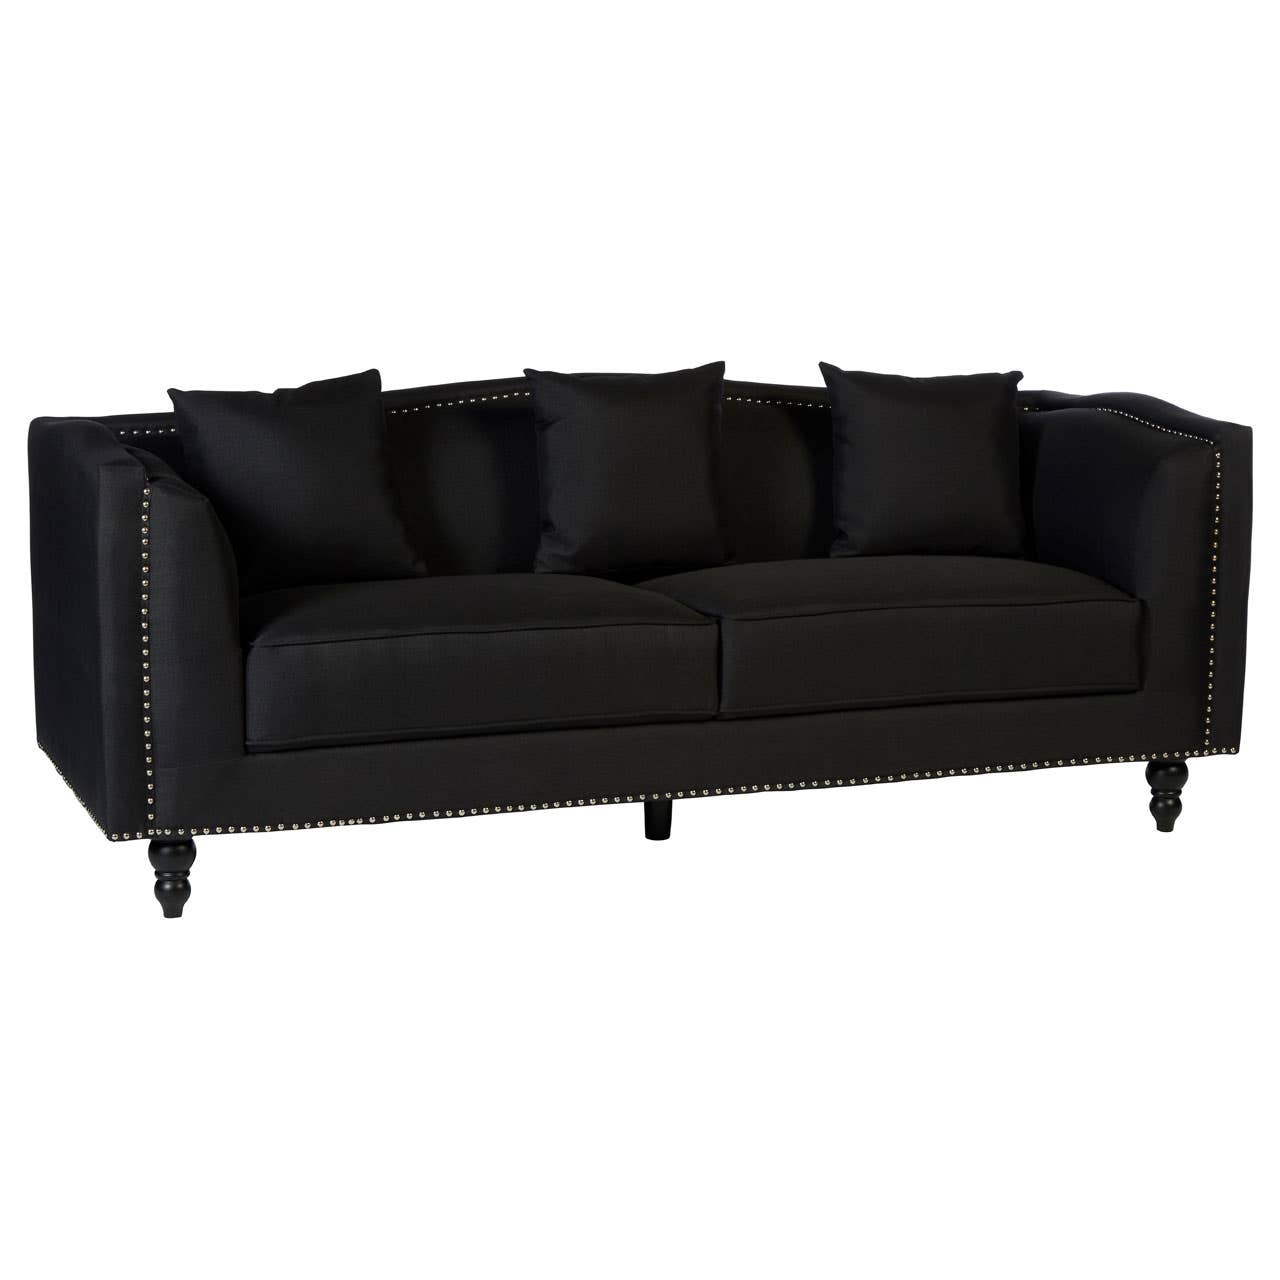 Feya 3 Seat Black Fabric Sofa